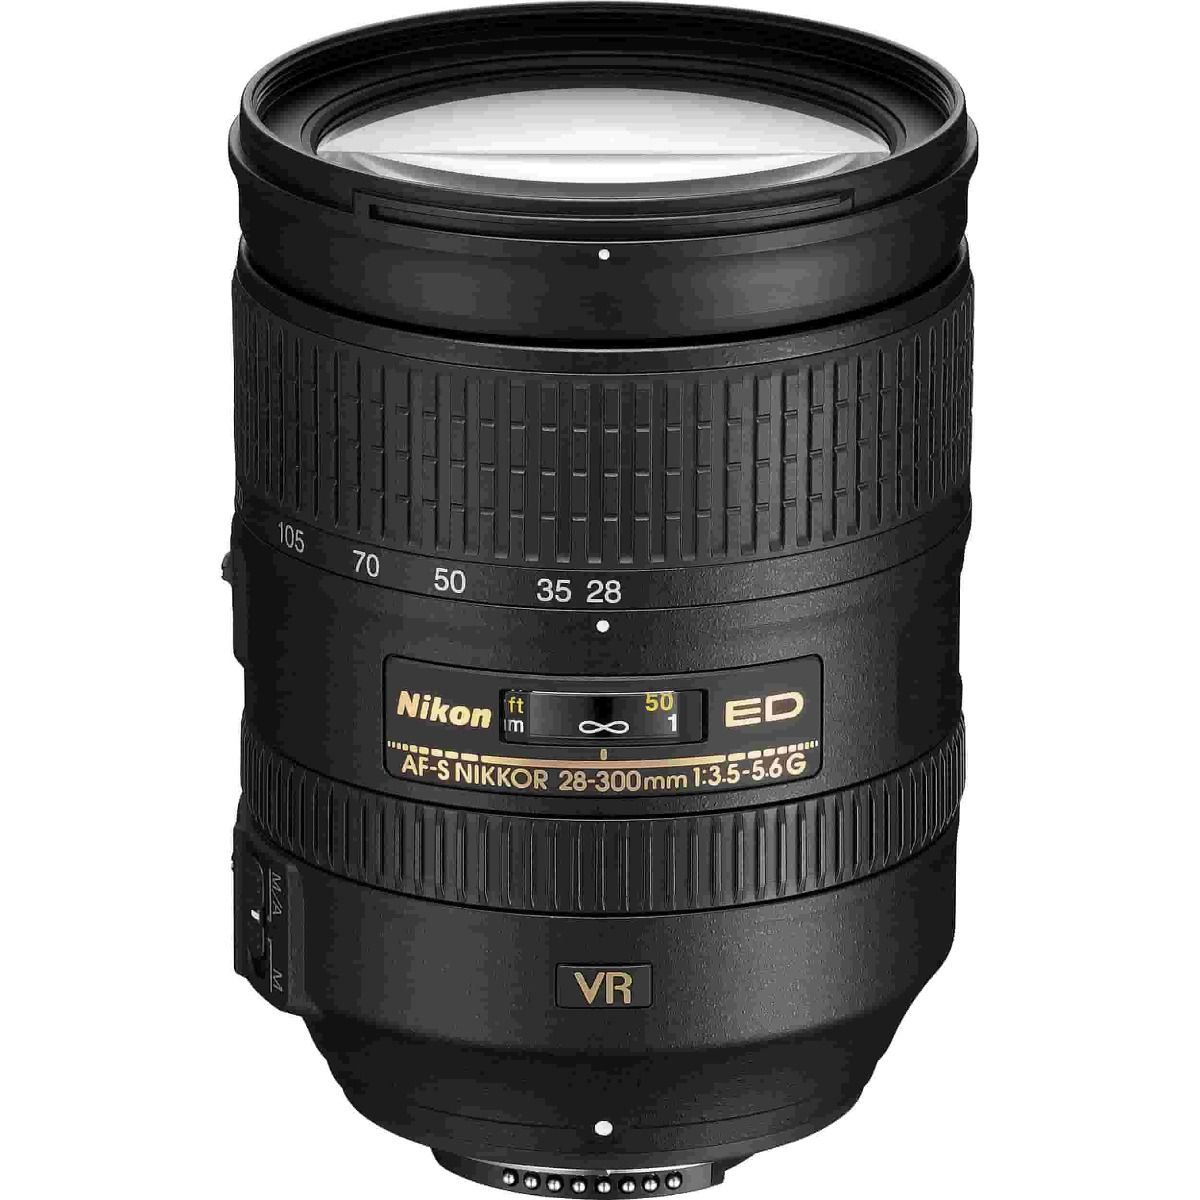 Nikon AF-S 28-300mm f/3.5-5.6G ED VR Lens,Nikon AF-S 28-300mm f/3.5-5.6G ED VR Lens,Nikon AF-S 28-300mm f/3.5-5.6G ED VR Lens,Nikon AF-S 28-300mm f/3.5-5.6G ED VR Lens,Nikon AF-S 28-300mm f/3.5-5.6G ED VR Lens